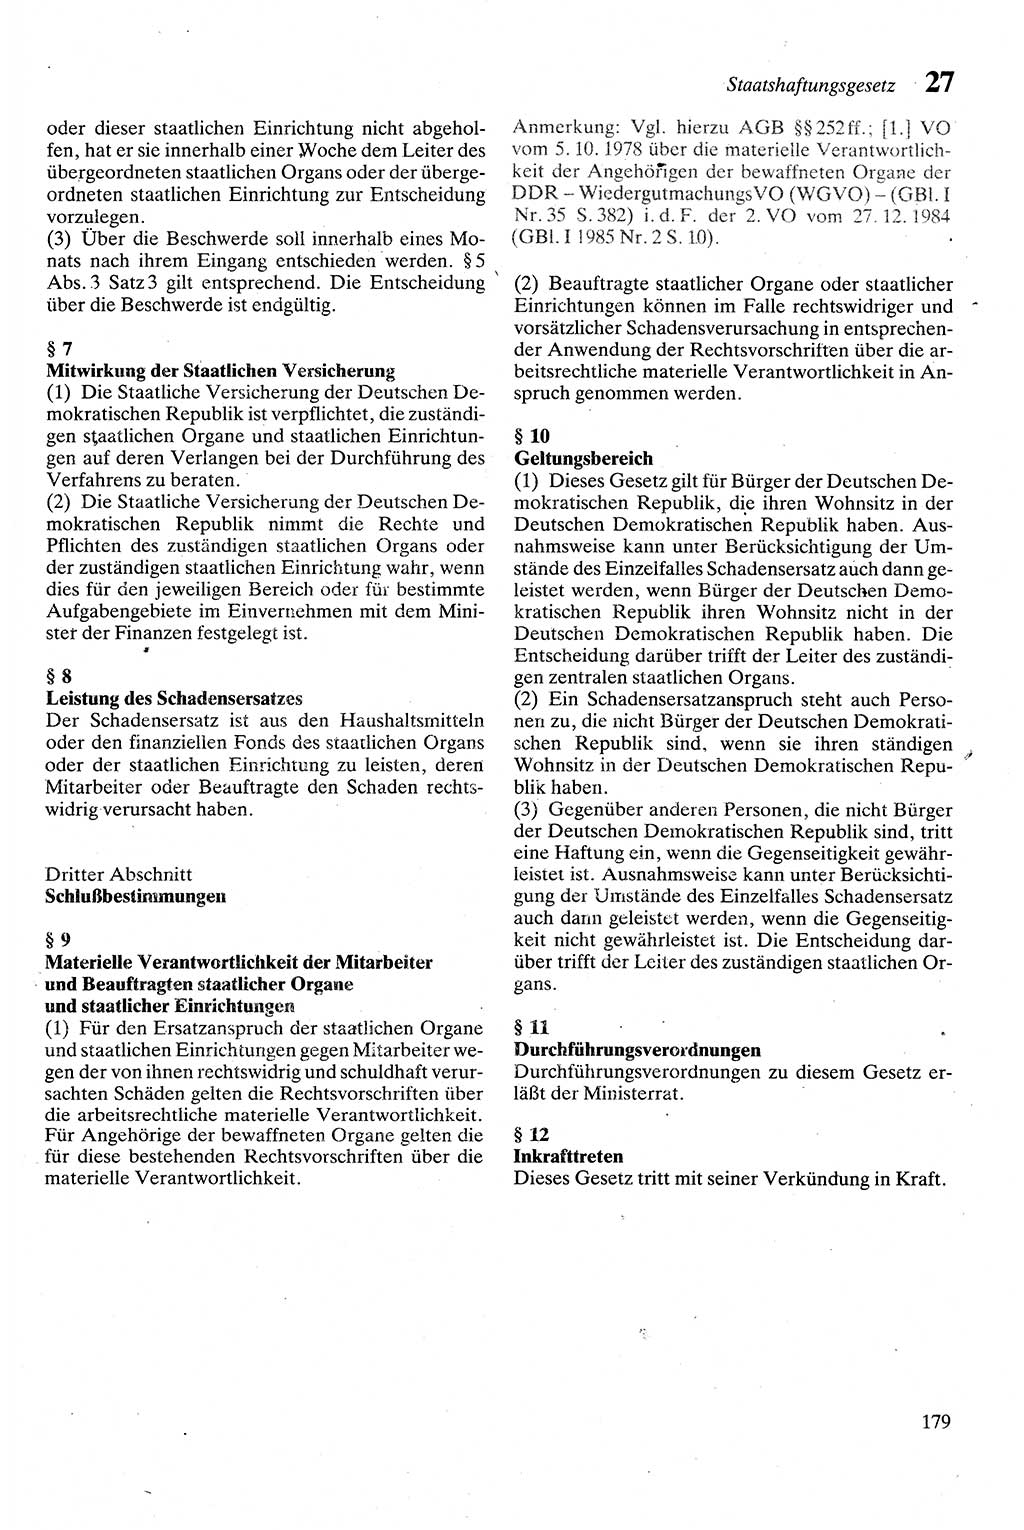 Zivilgesetzbuch (ZVG) sowie angrenzende Gesetze und Bestimmungen [Deutsche Demokratische Republik (DDR)] 1975, Seite 179 (ZGB Ges. Best. DDR 1975, S. 179)